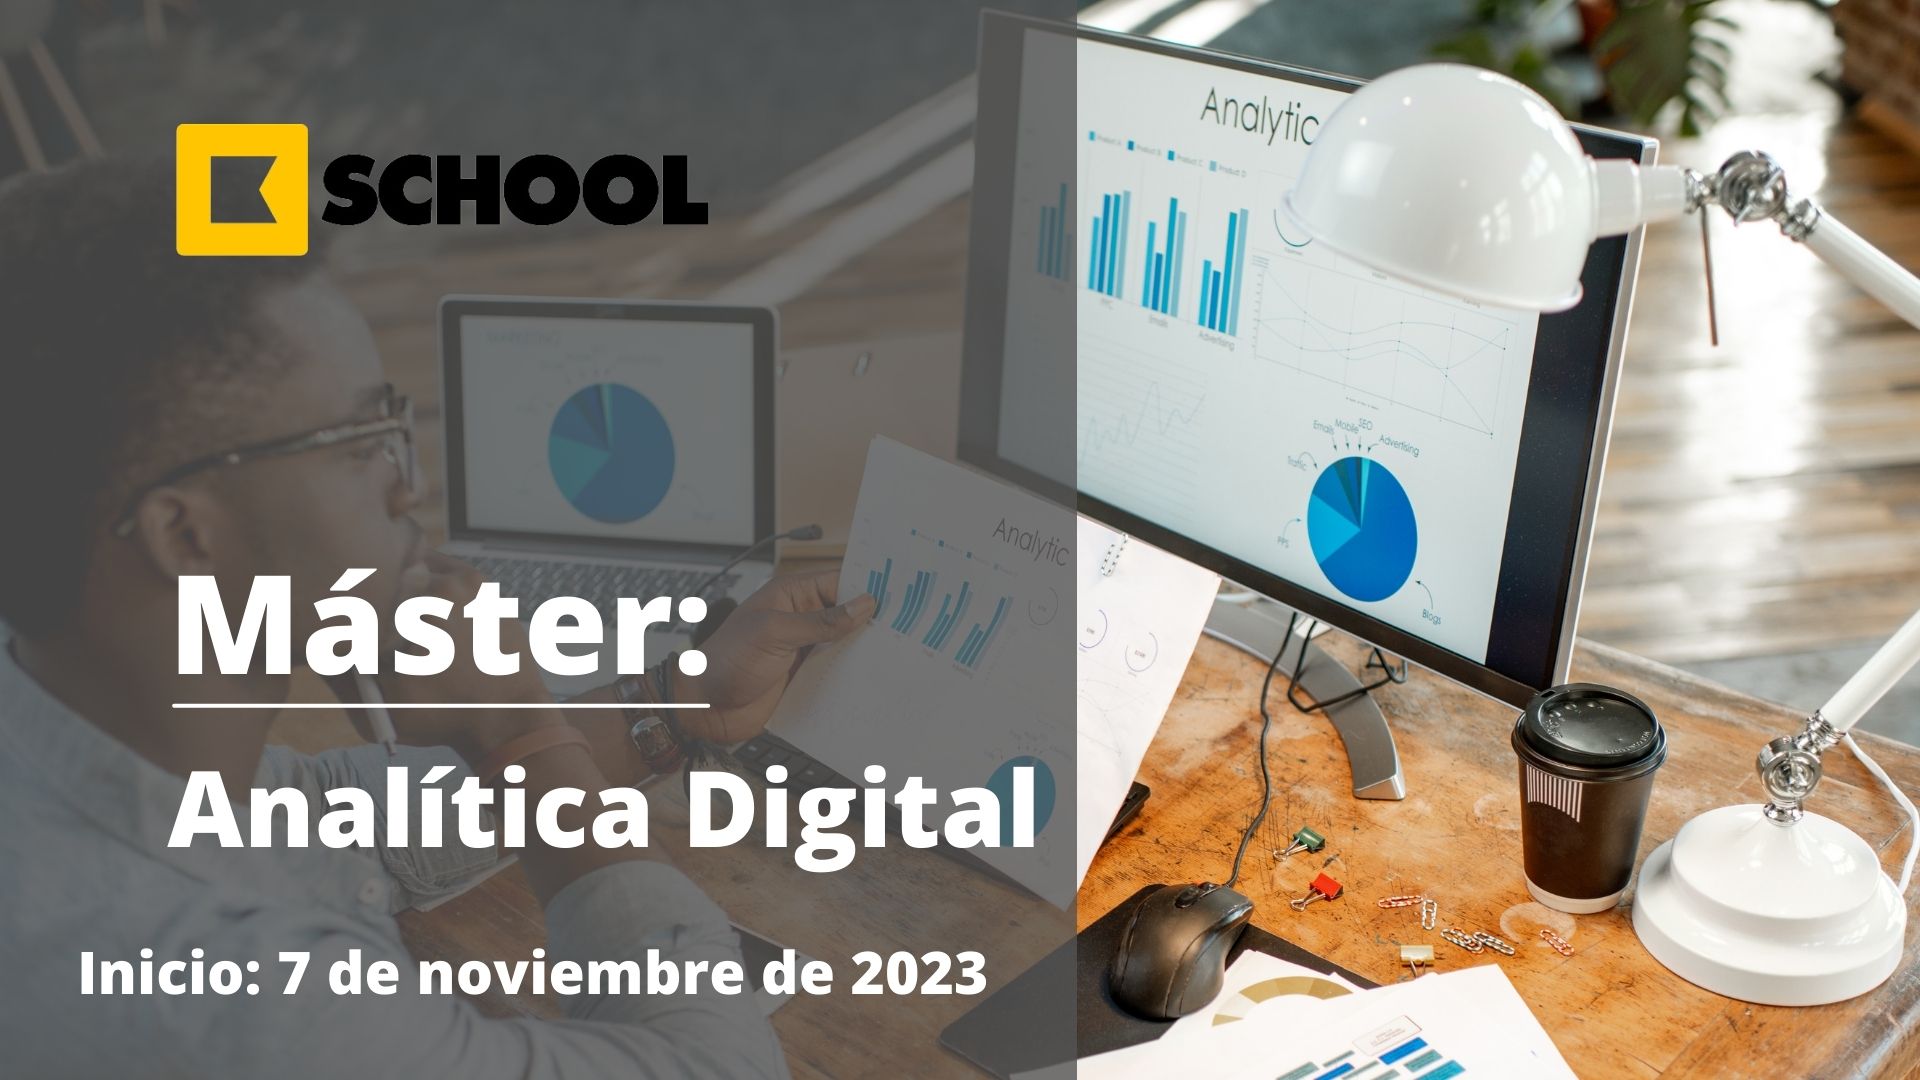 Máster | Analítica Digital | KSchool | Cámara de Comercio de Murcia